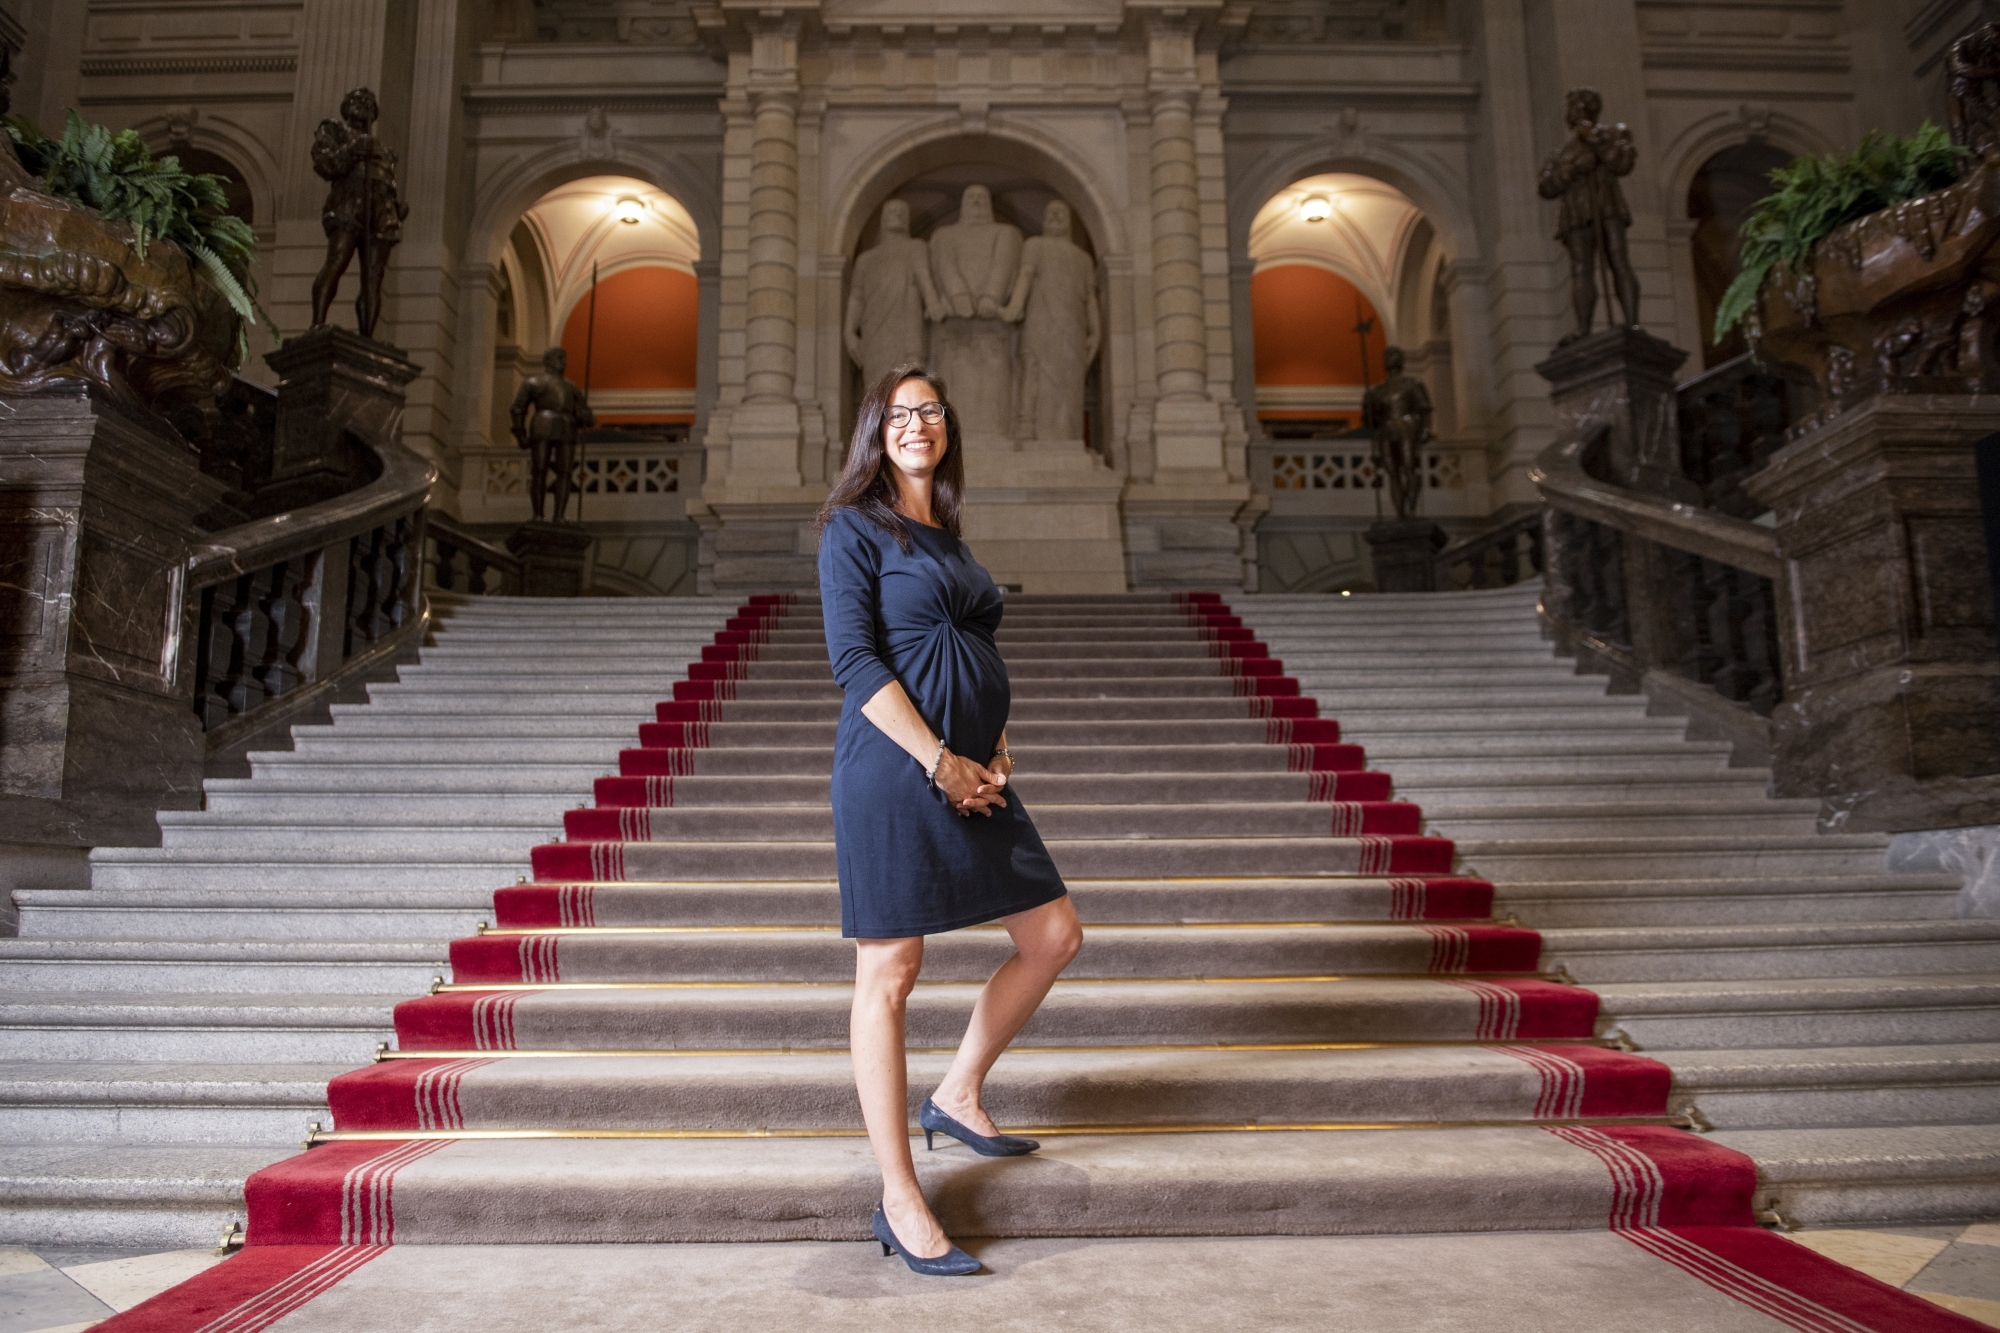 La Neuchâteloise Céline Vara regrette que la Suisse n'ait pas de système permettant aux élues fédérales de voter à distance durant leur congé maternité.